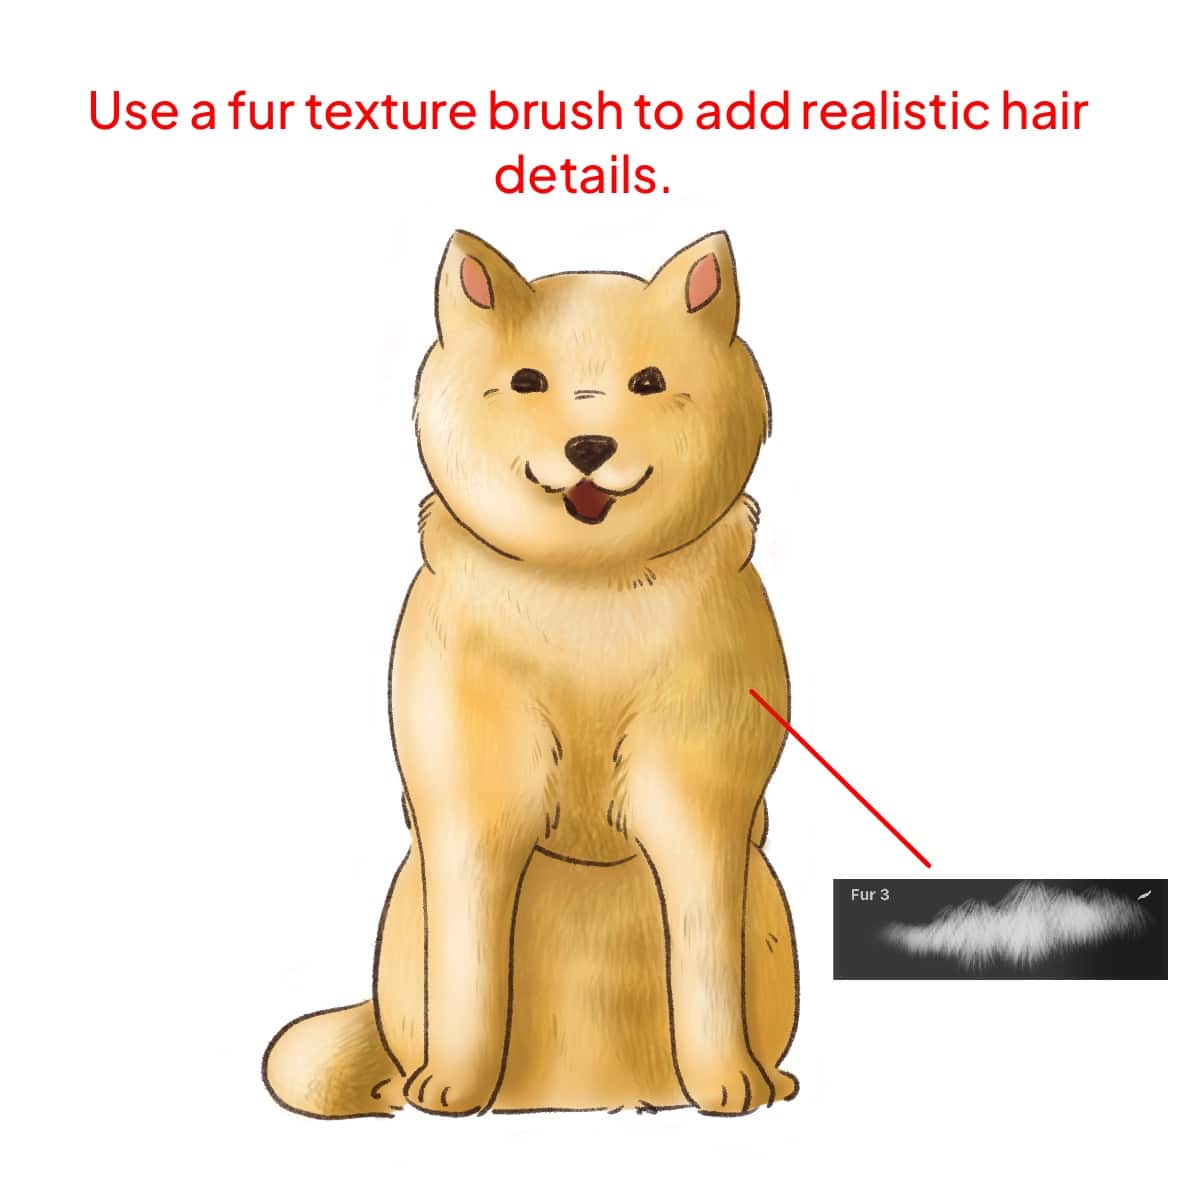 Fur texture brush